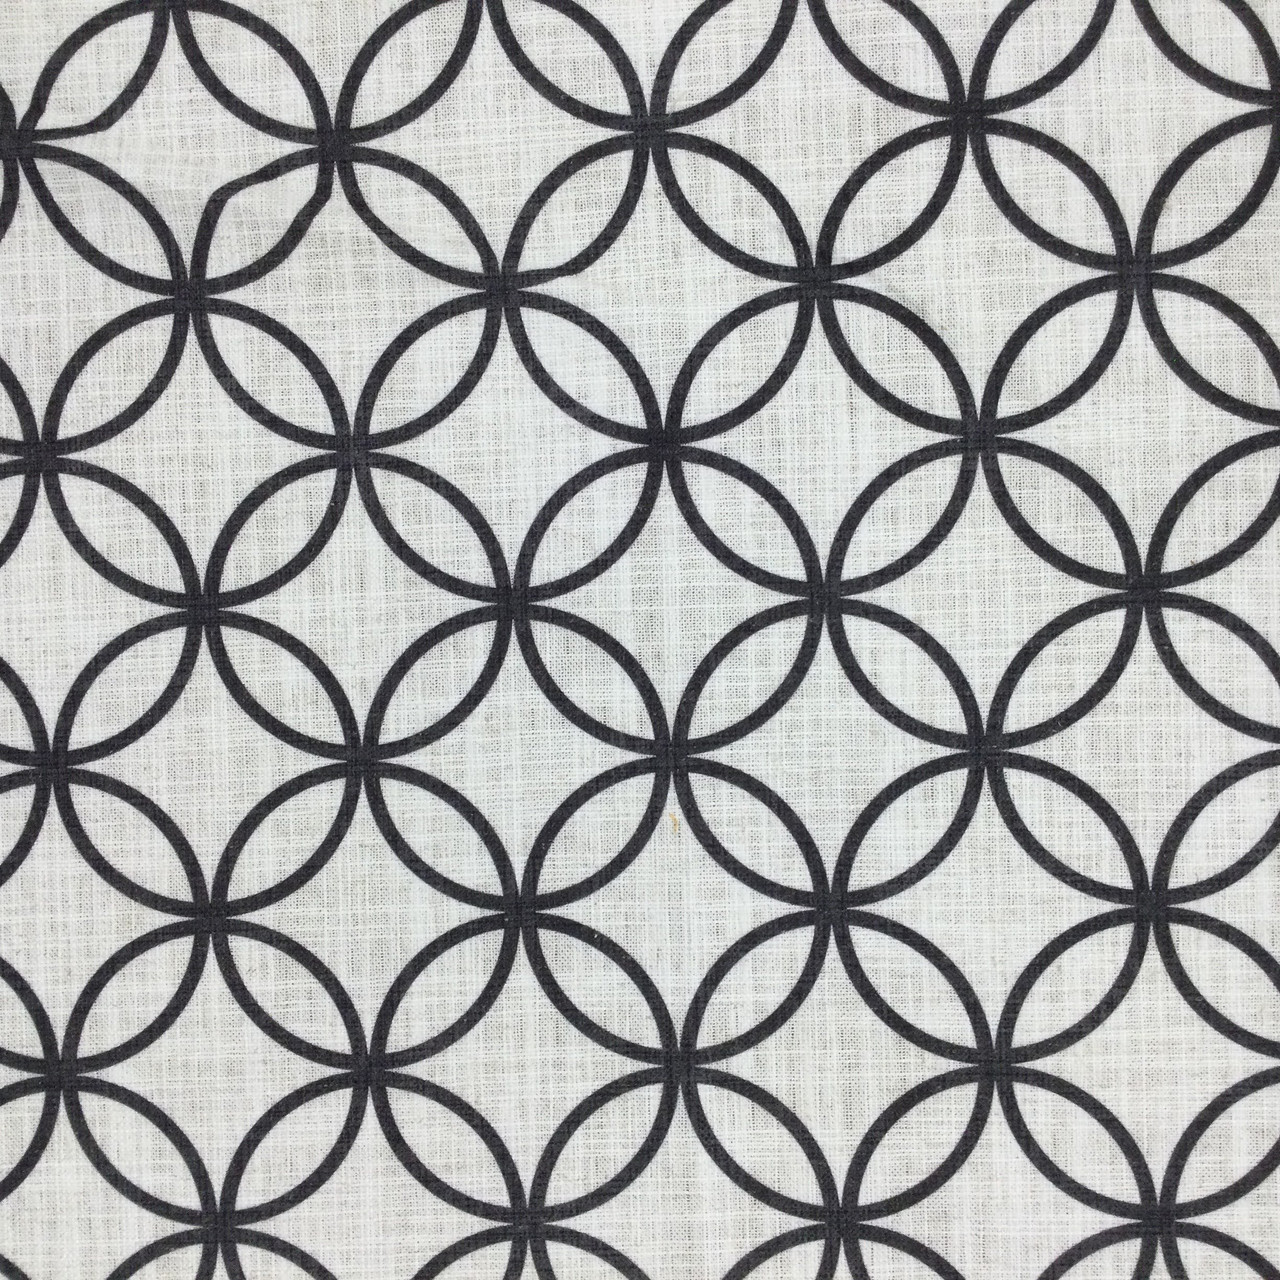 Black & White Grid Fabric 3285 – Fabrics4Fashion